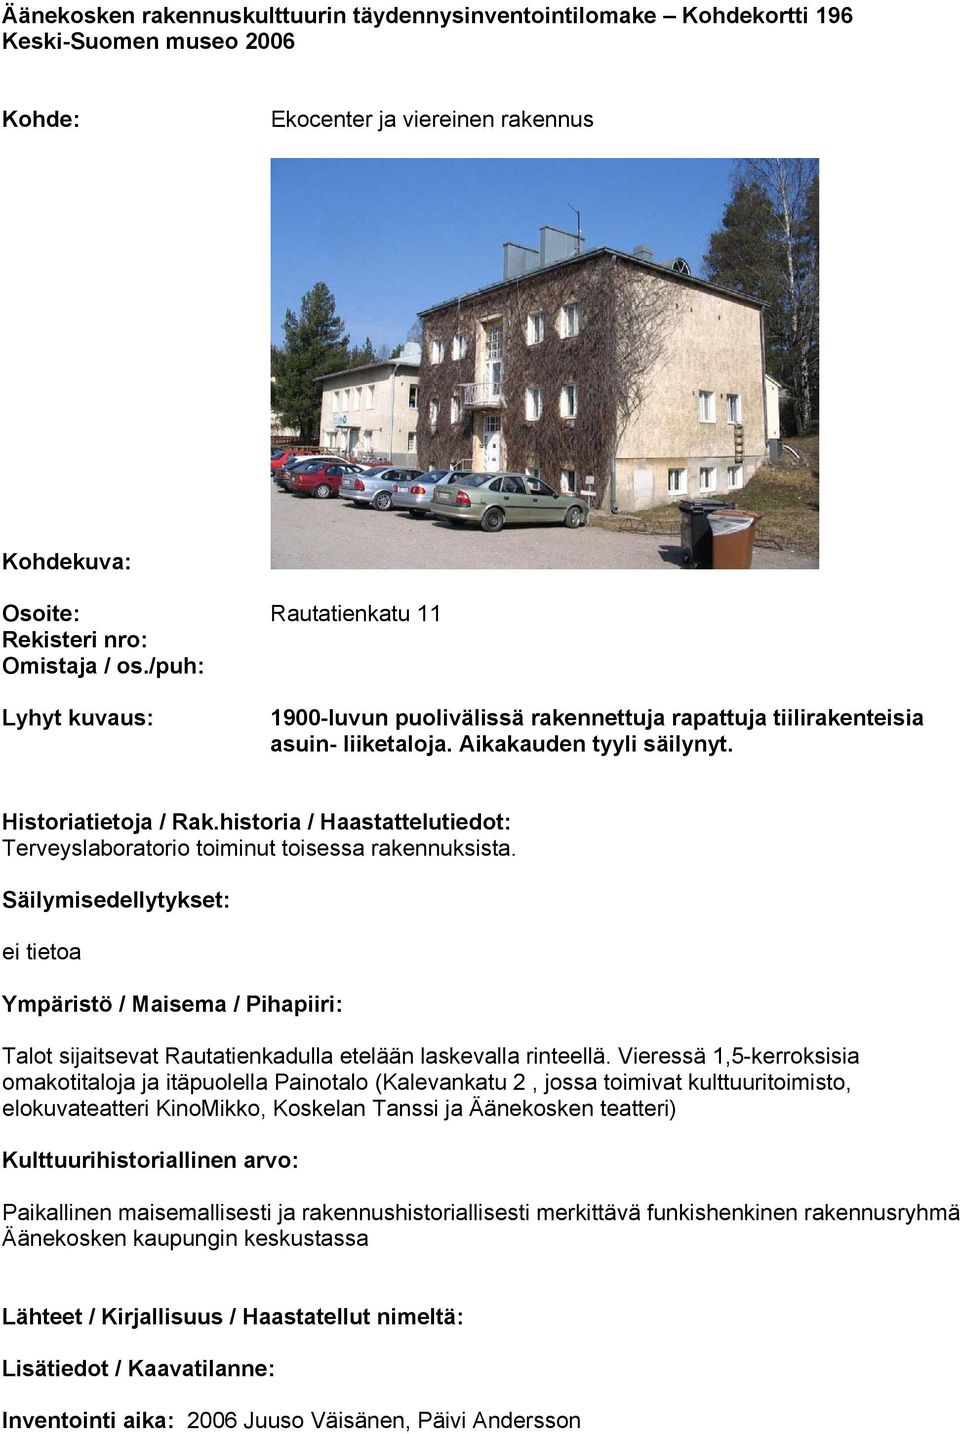 Äänekosken rakennuskulttuurin täydennysinventointilomake Kohdekortti 160  Keski-Suomen museo PDF Ilmainen lataus